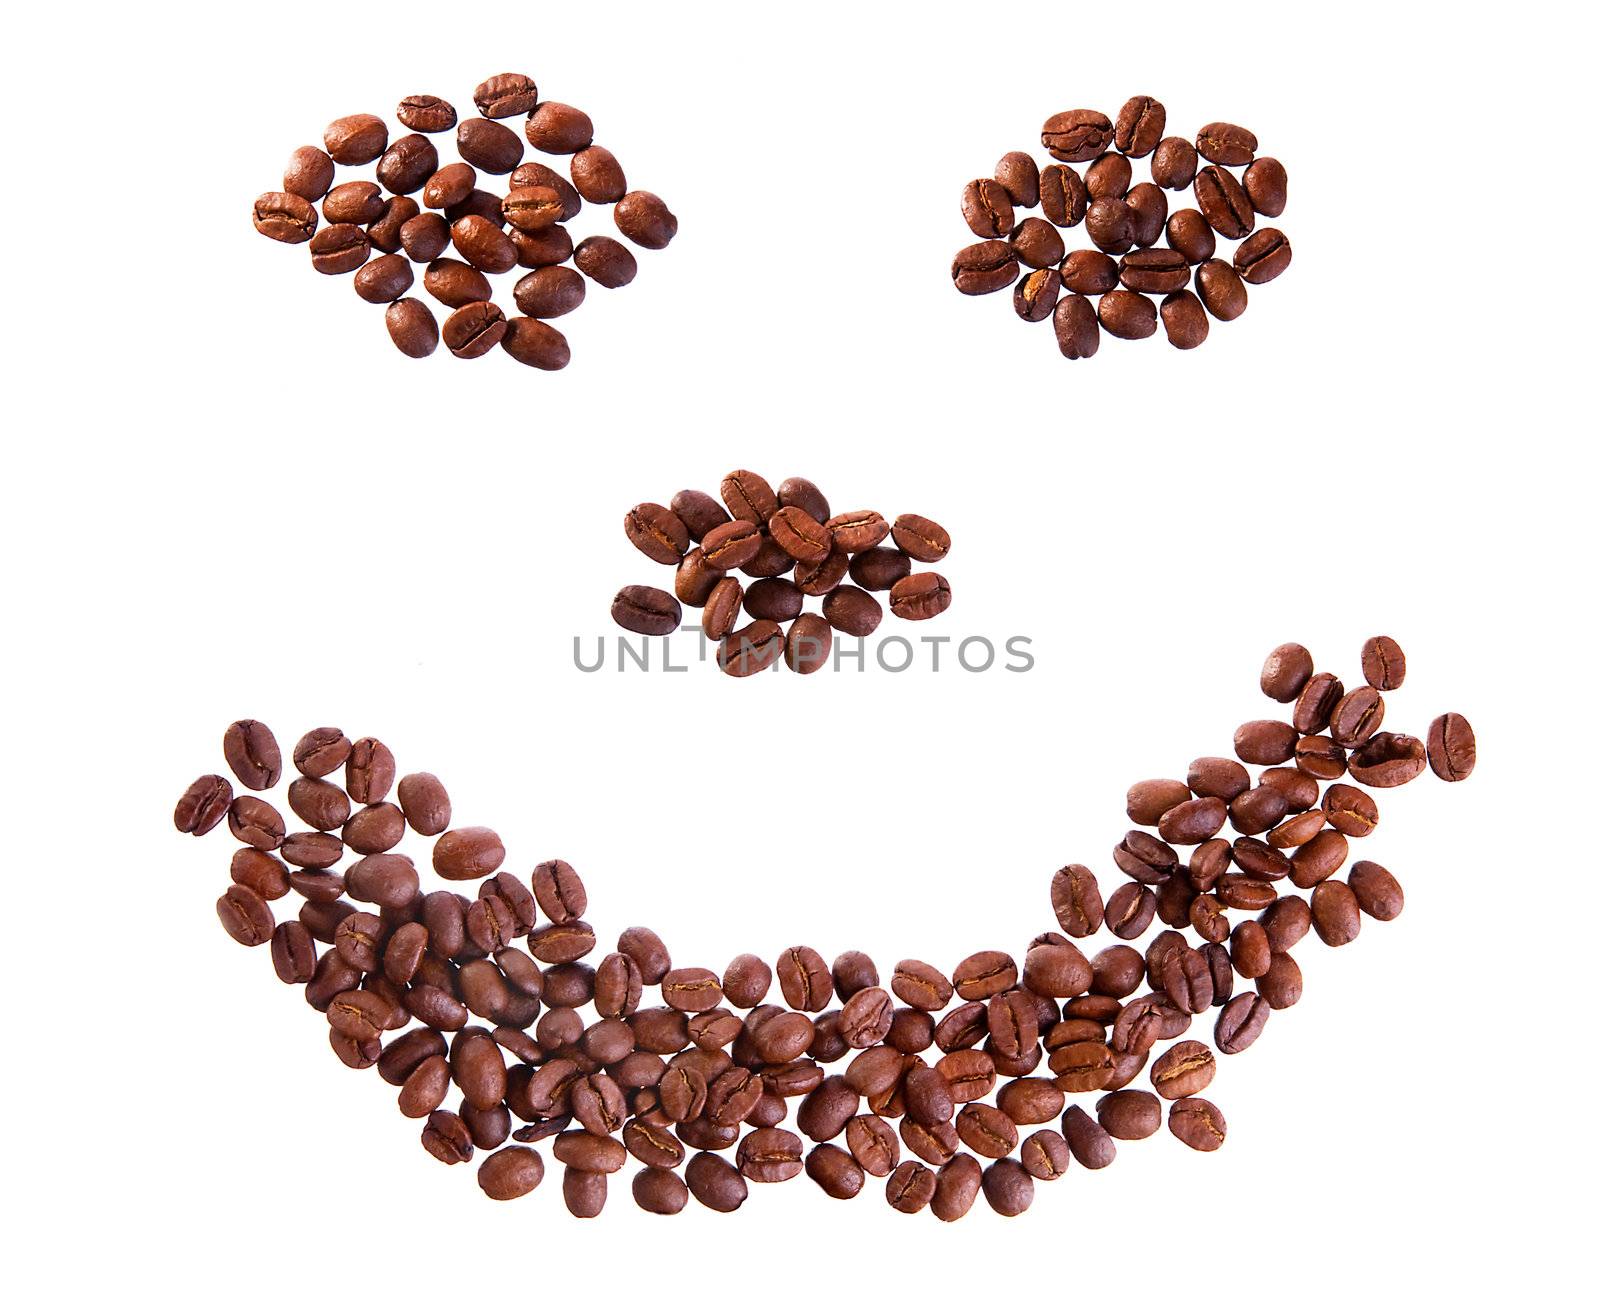 Smile with coffee beans by iryna_rasko